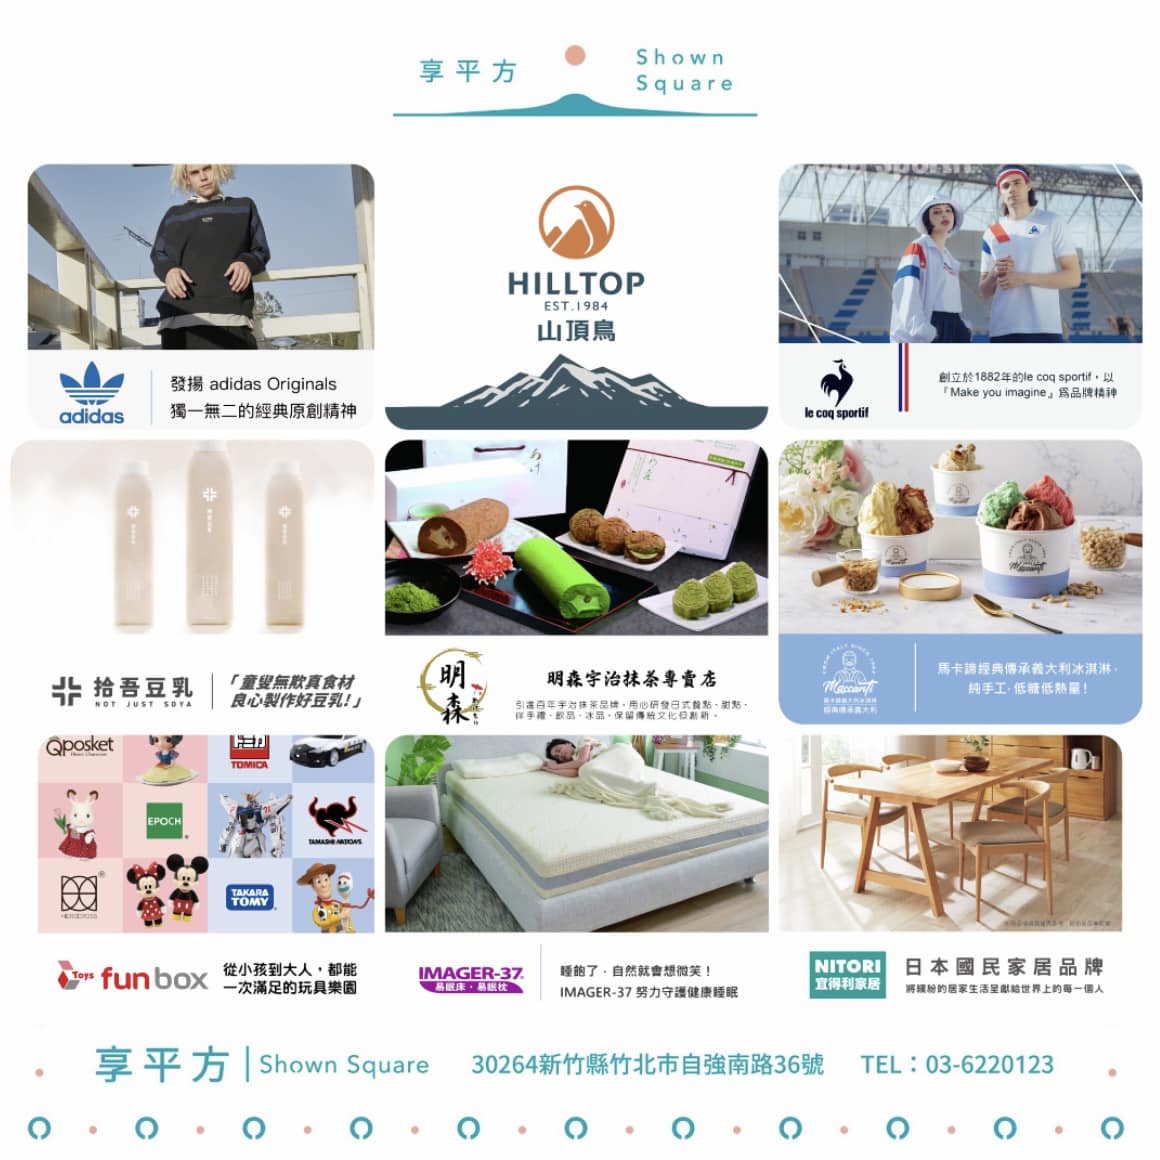 新竹「享平方 Shown Square」在粉絲專頁上搶先曝光 18 間品牌